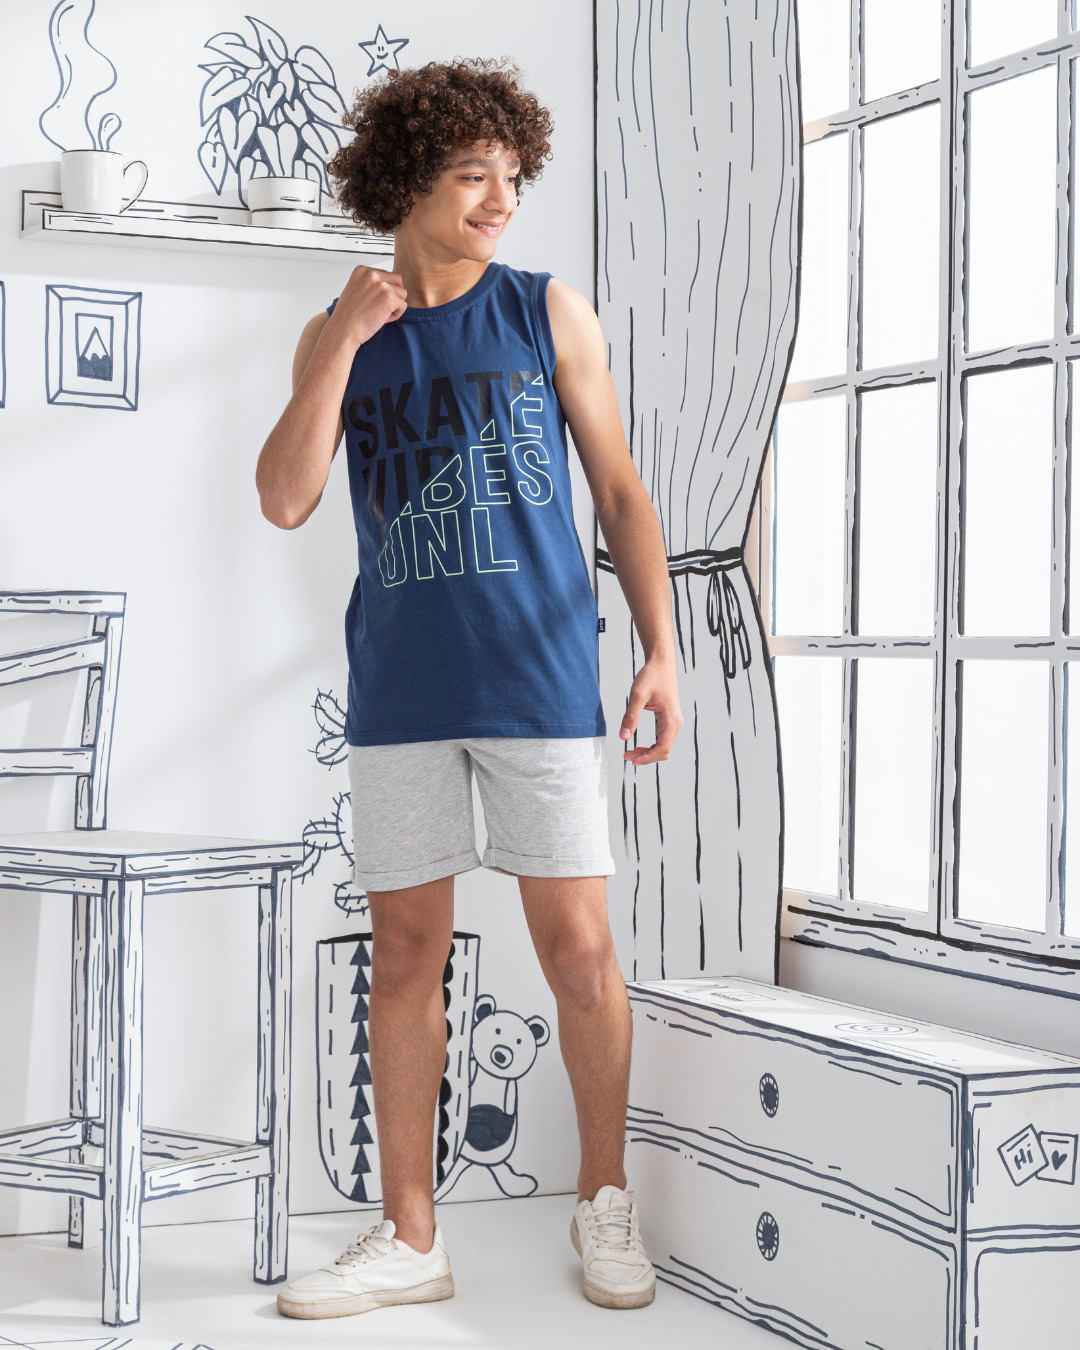 Skate Boys' pajamas, printed T-shirt and shorts